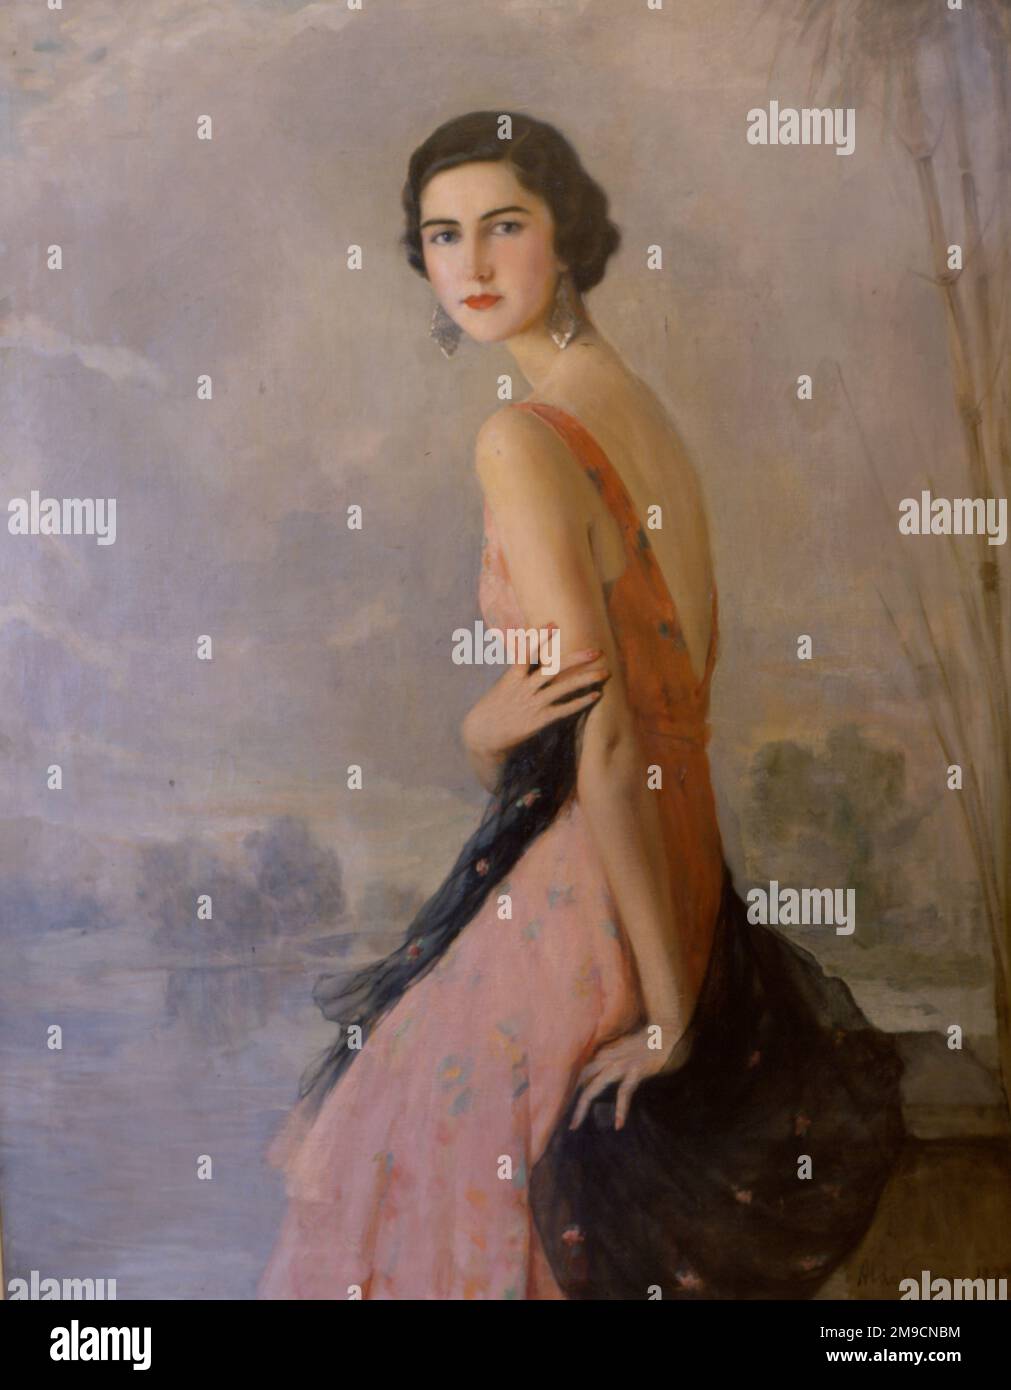 Ein atemberaubendes Porträt einer schönen Frau von Aldo Severi. Stockfoto